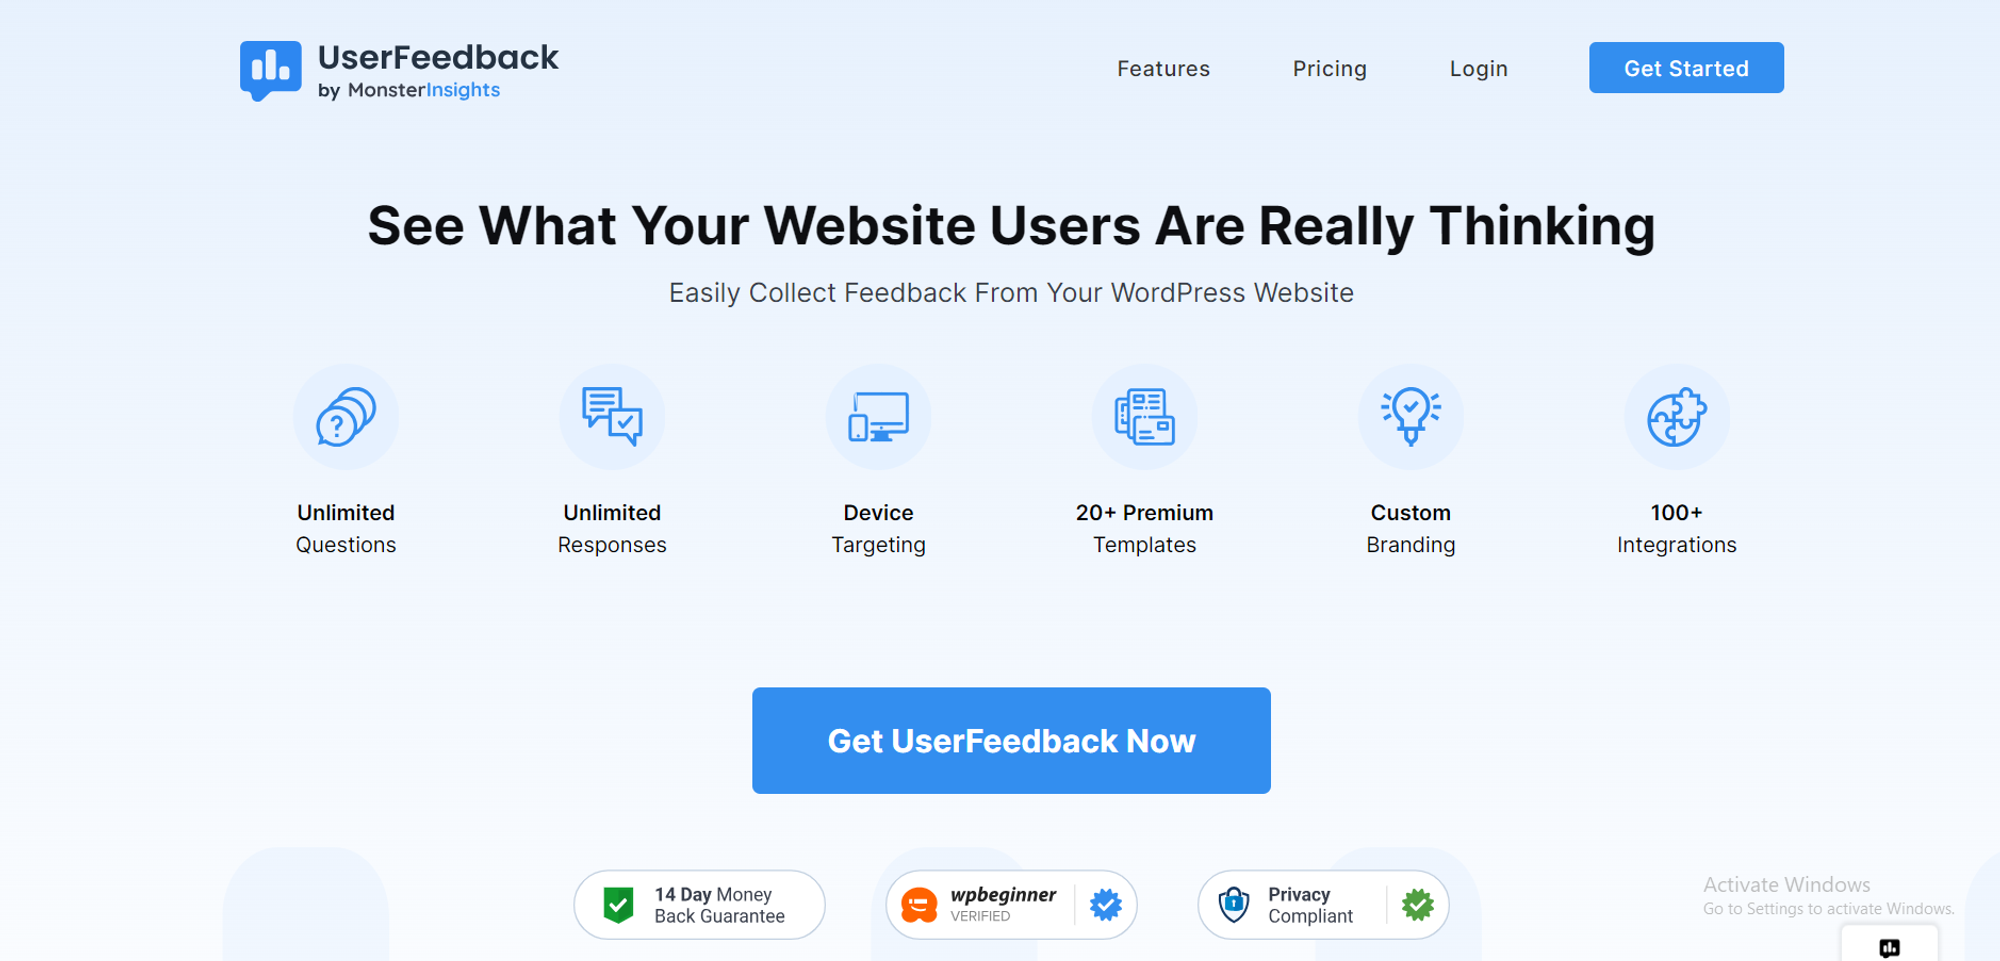 User feedback tools: UserFeedback